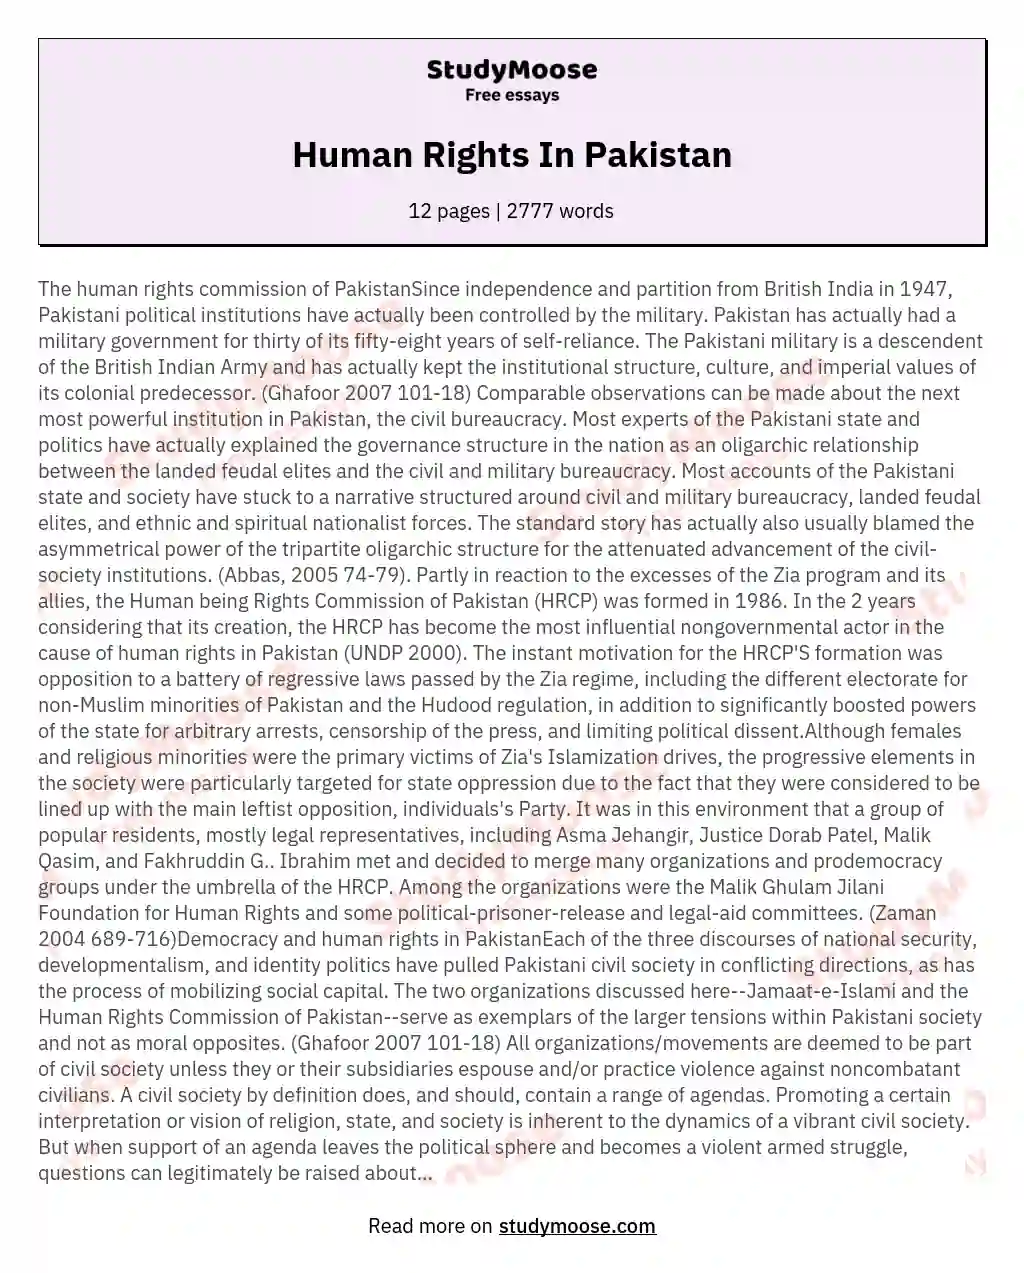 Human Rights In Pakistan essay